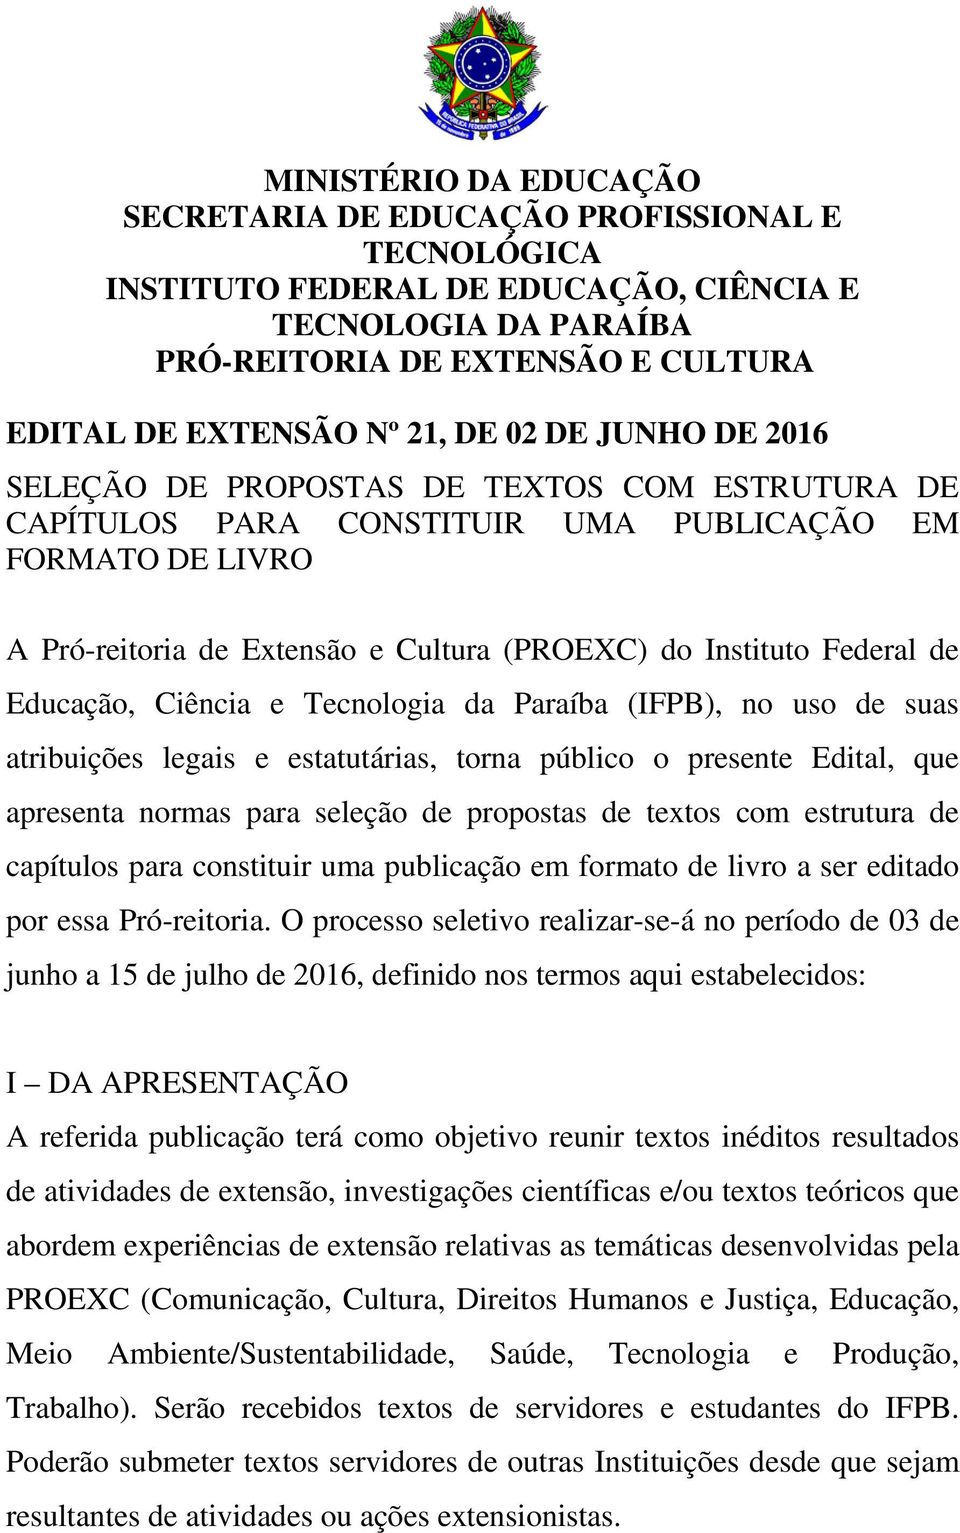 Educação, Ciência e Tecnologia da Paraíba (IFPB), no uso de suas atribuições legais e estatutárias, torna público o presente Edital, que apresenta normas para seleção de propostas de textos com